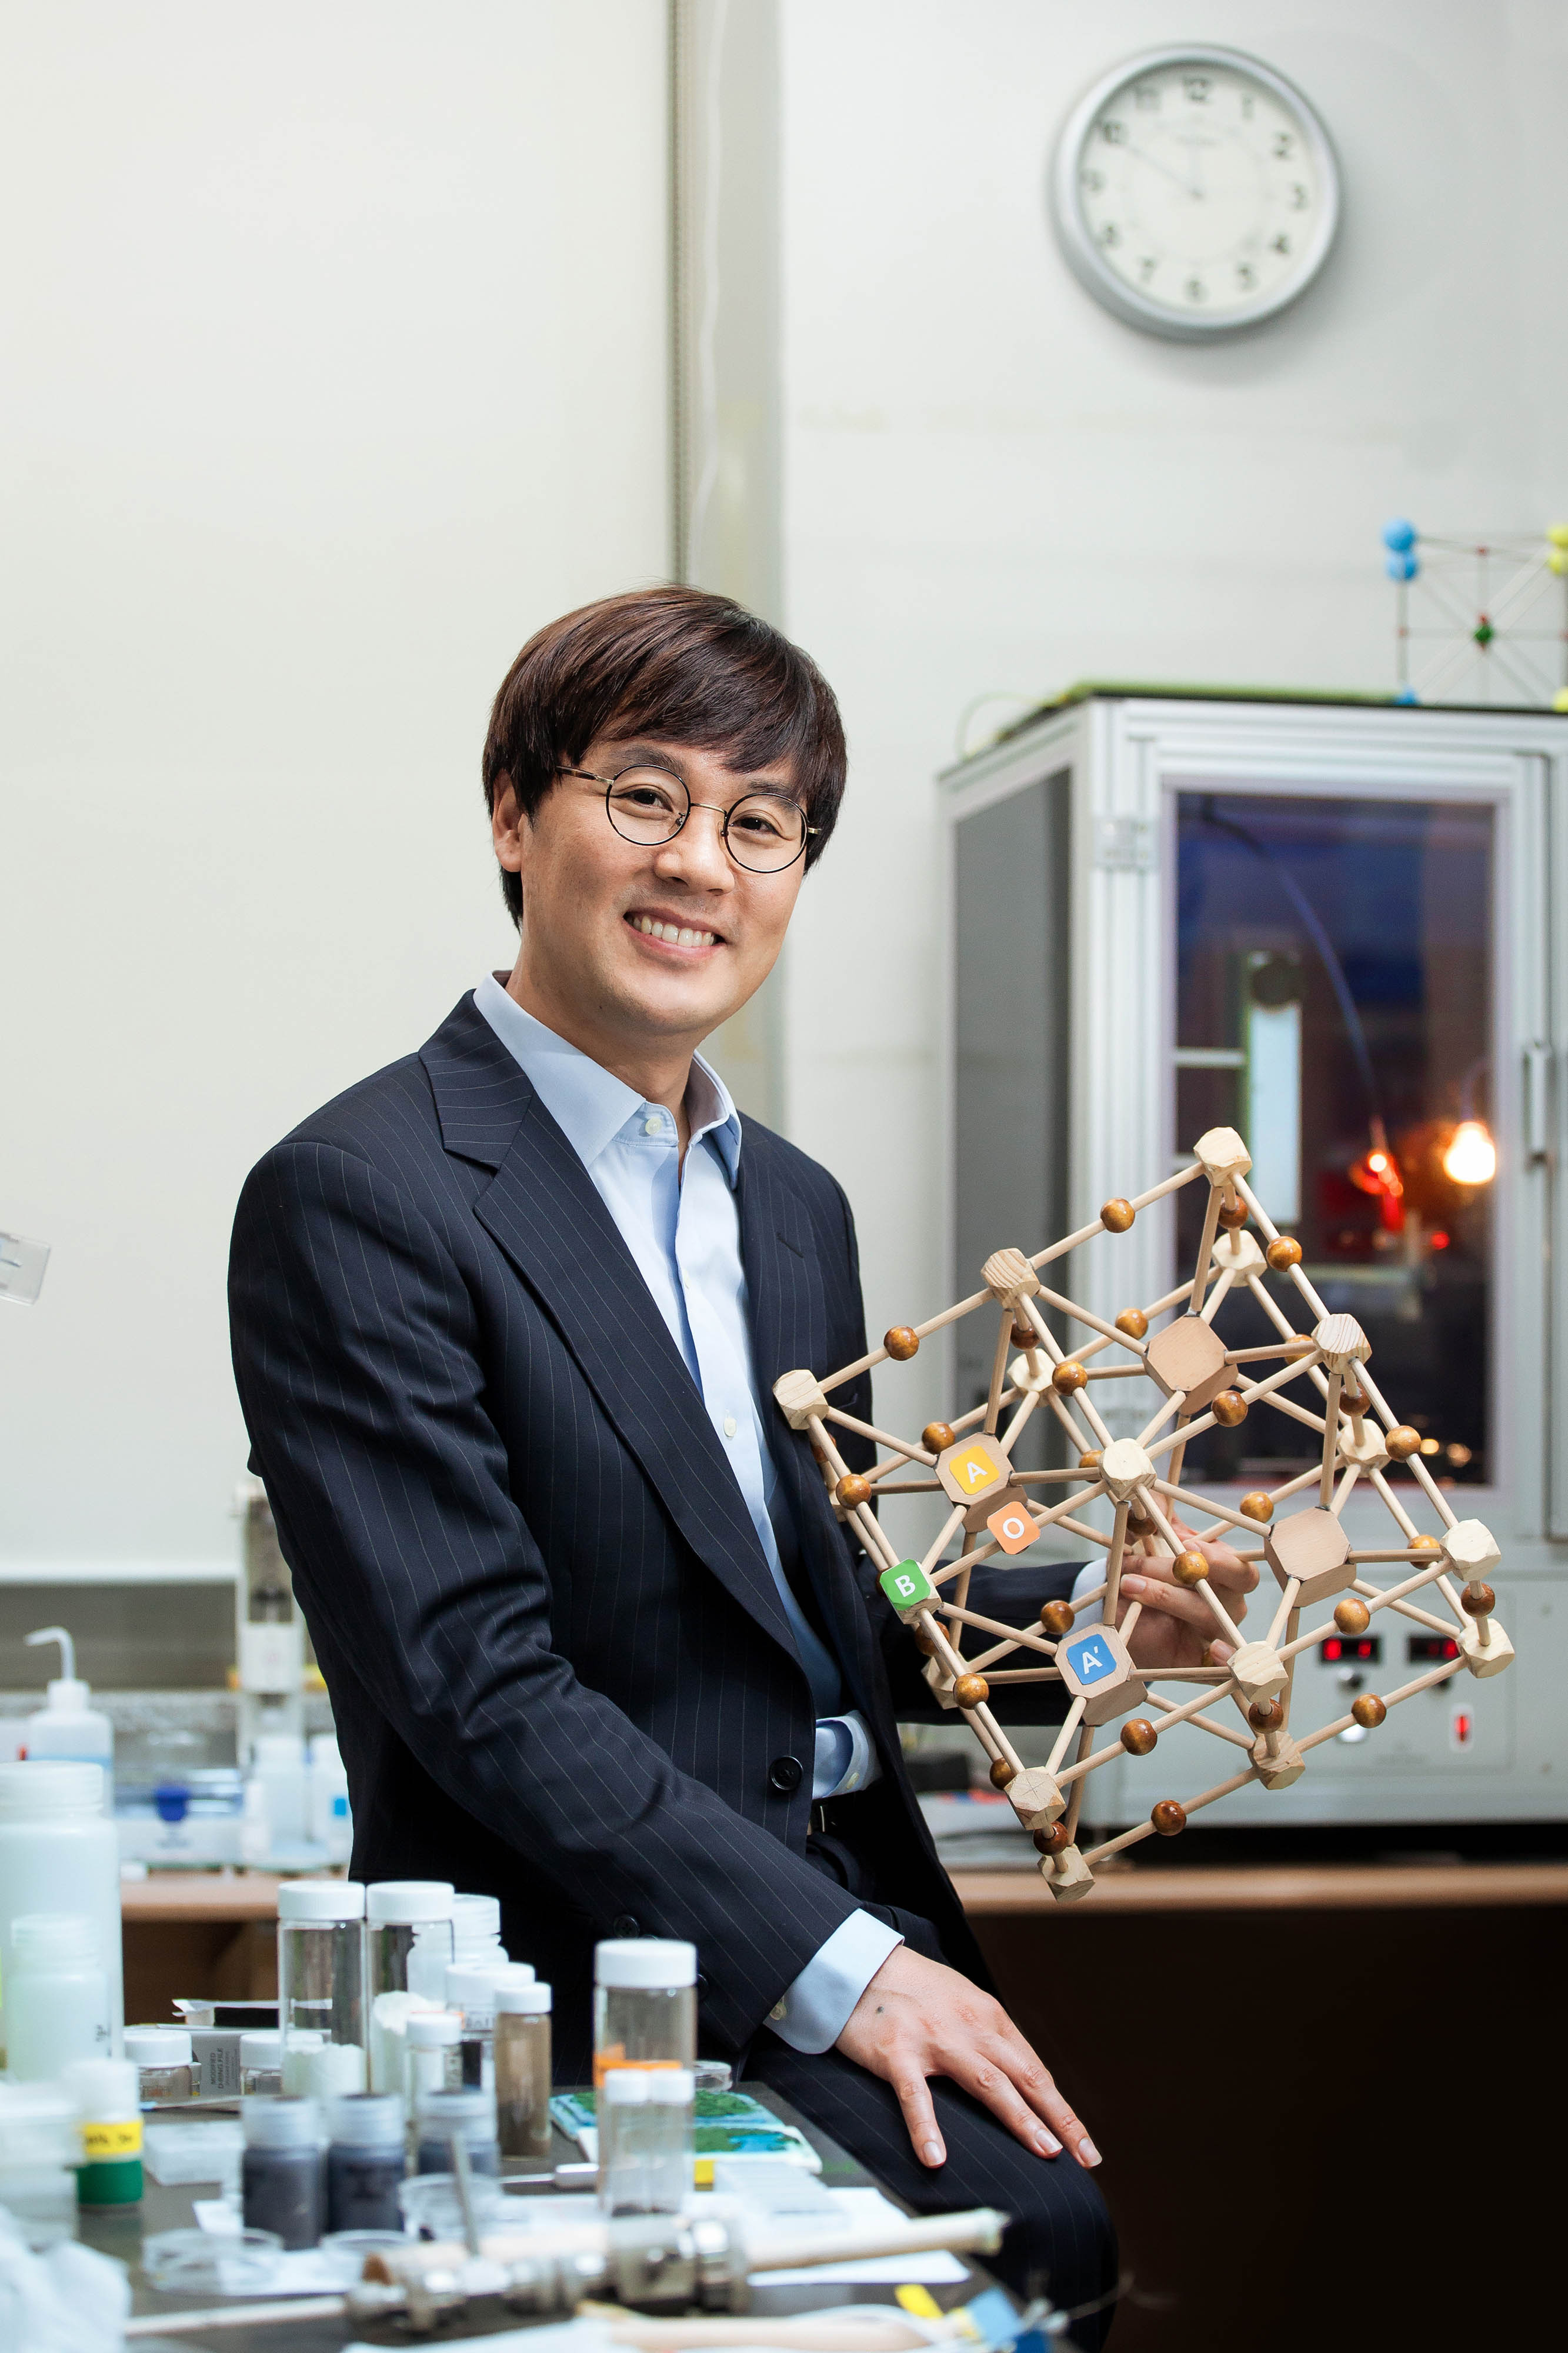 김건태 교수가 자신의 페로브스카이트 모형을 손에 들고 미소짓고 있다. | 사진: 이서연